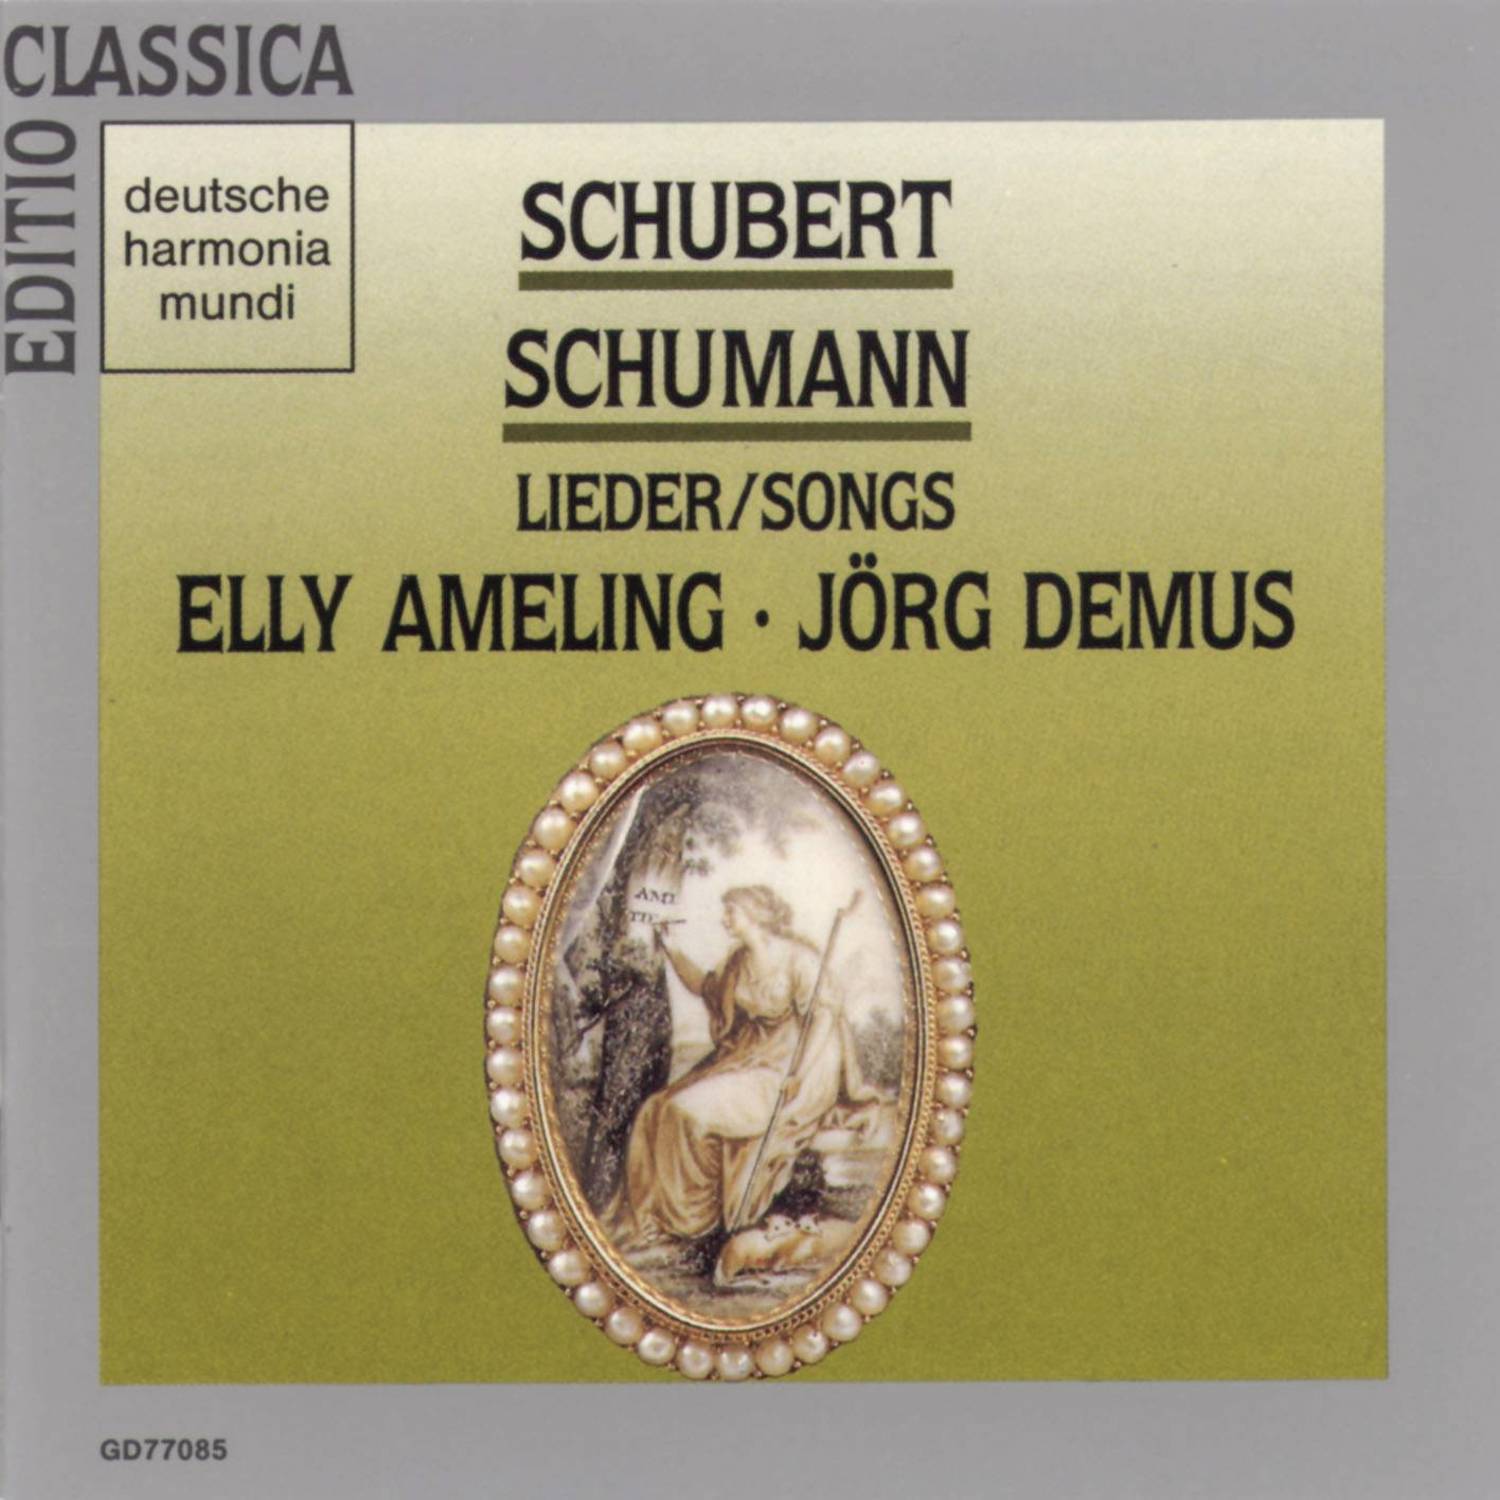 Schubert/Schumann: Lieder